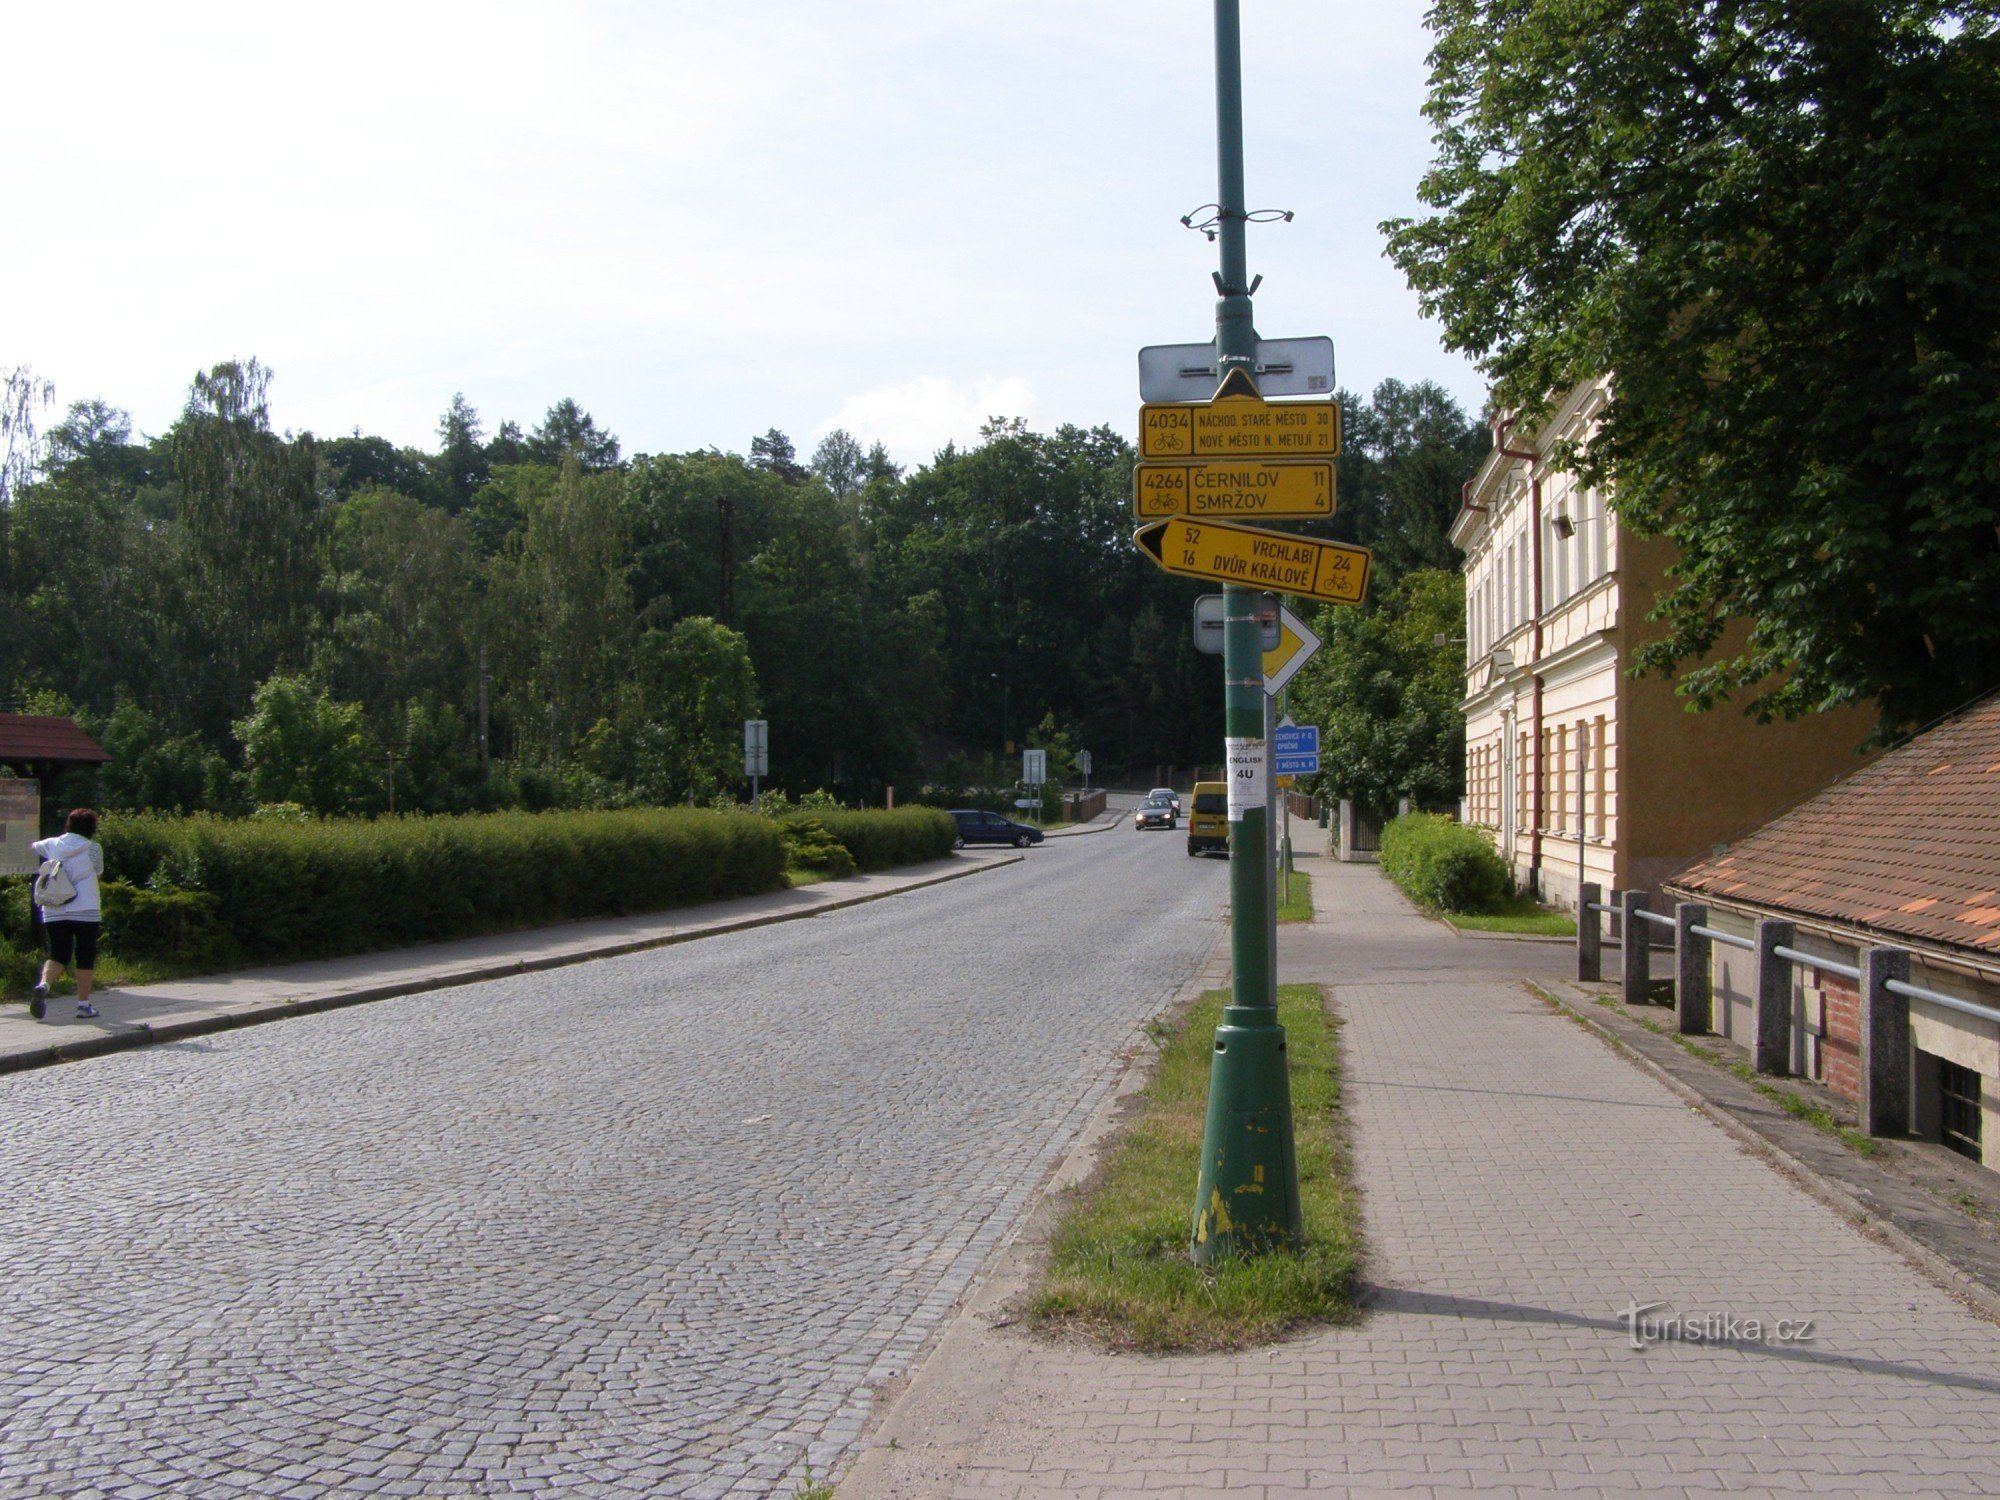 encruzilhada de cicloturismo - Josefov, perto da ponte